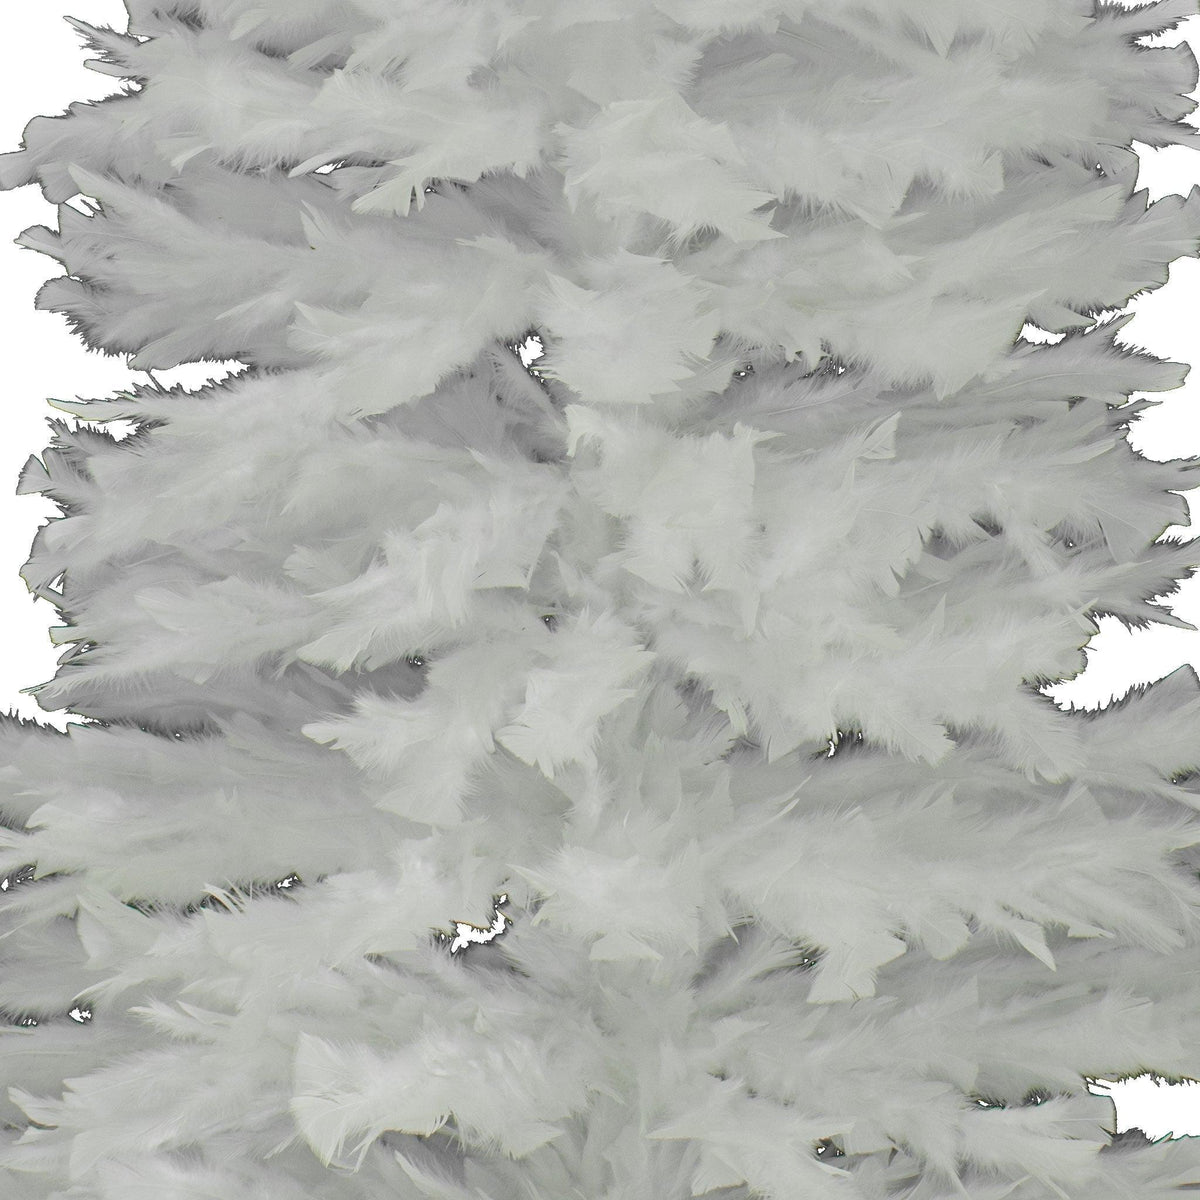 White Feather Trees (2 Sizes)